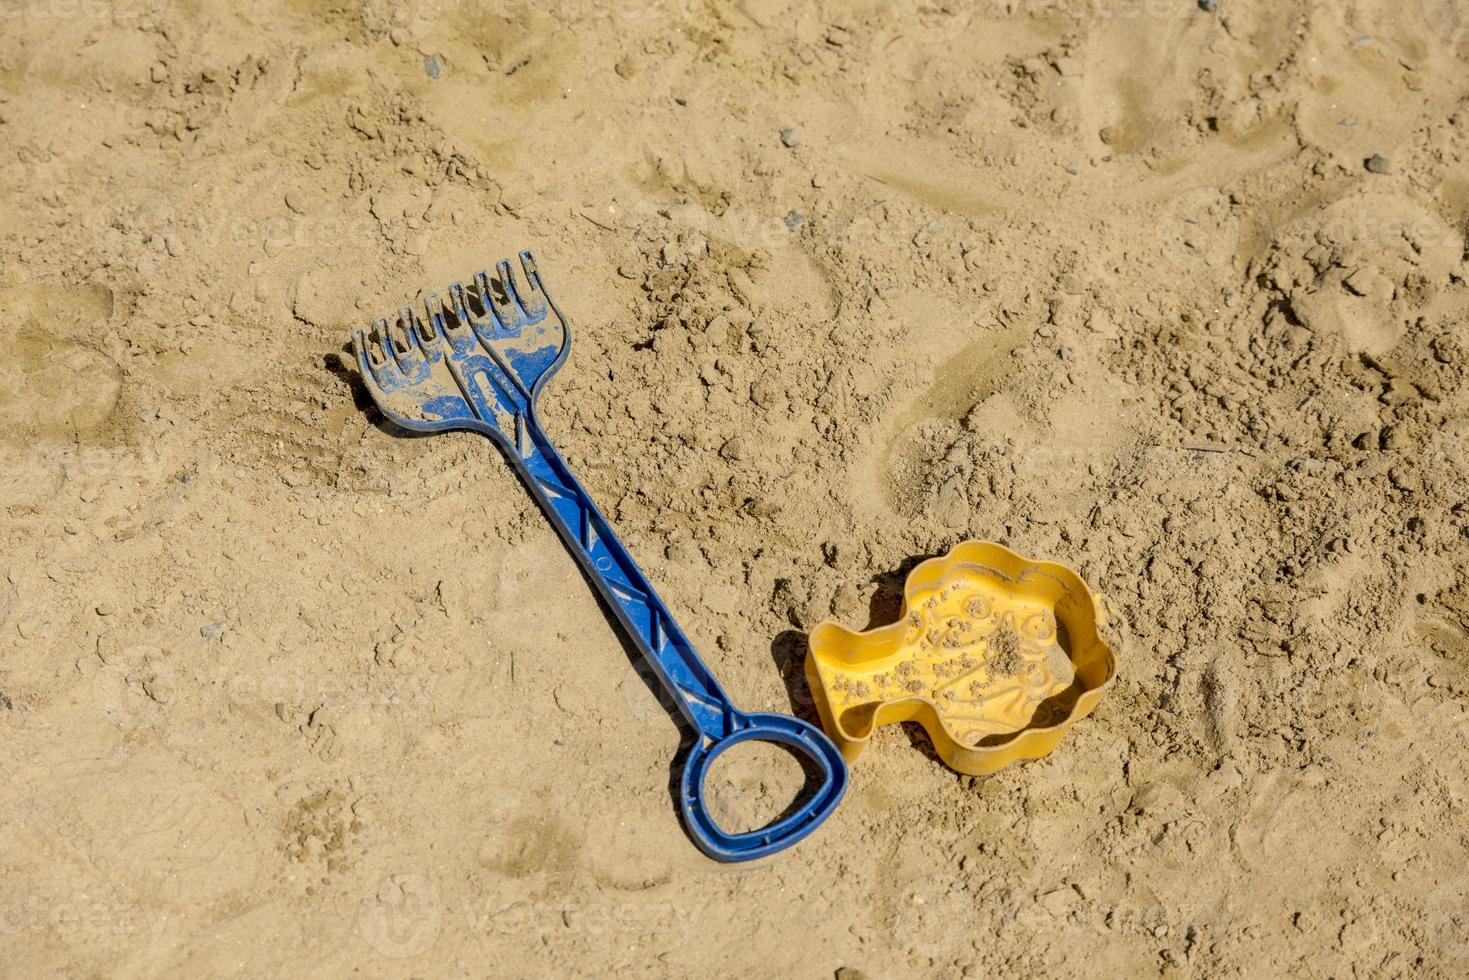 Pelle jouet pour enfants et moule de sable se trouvent sur le sable photo